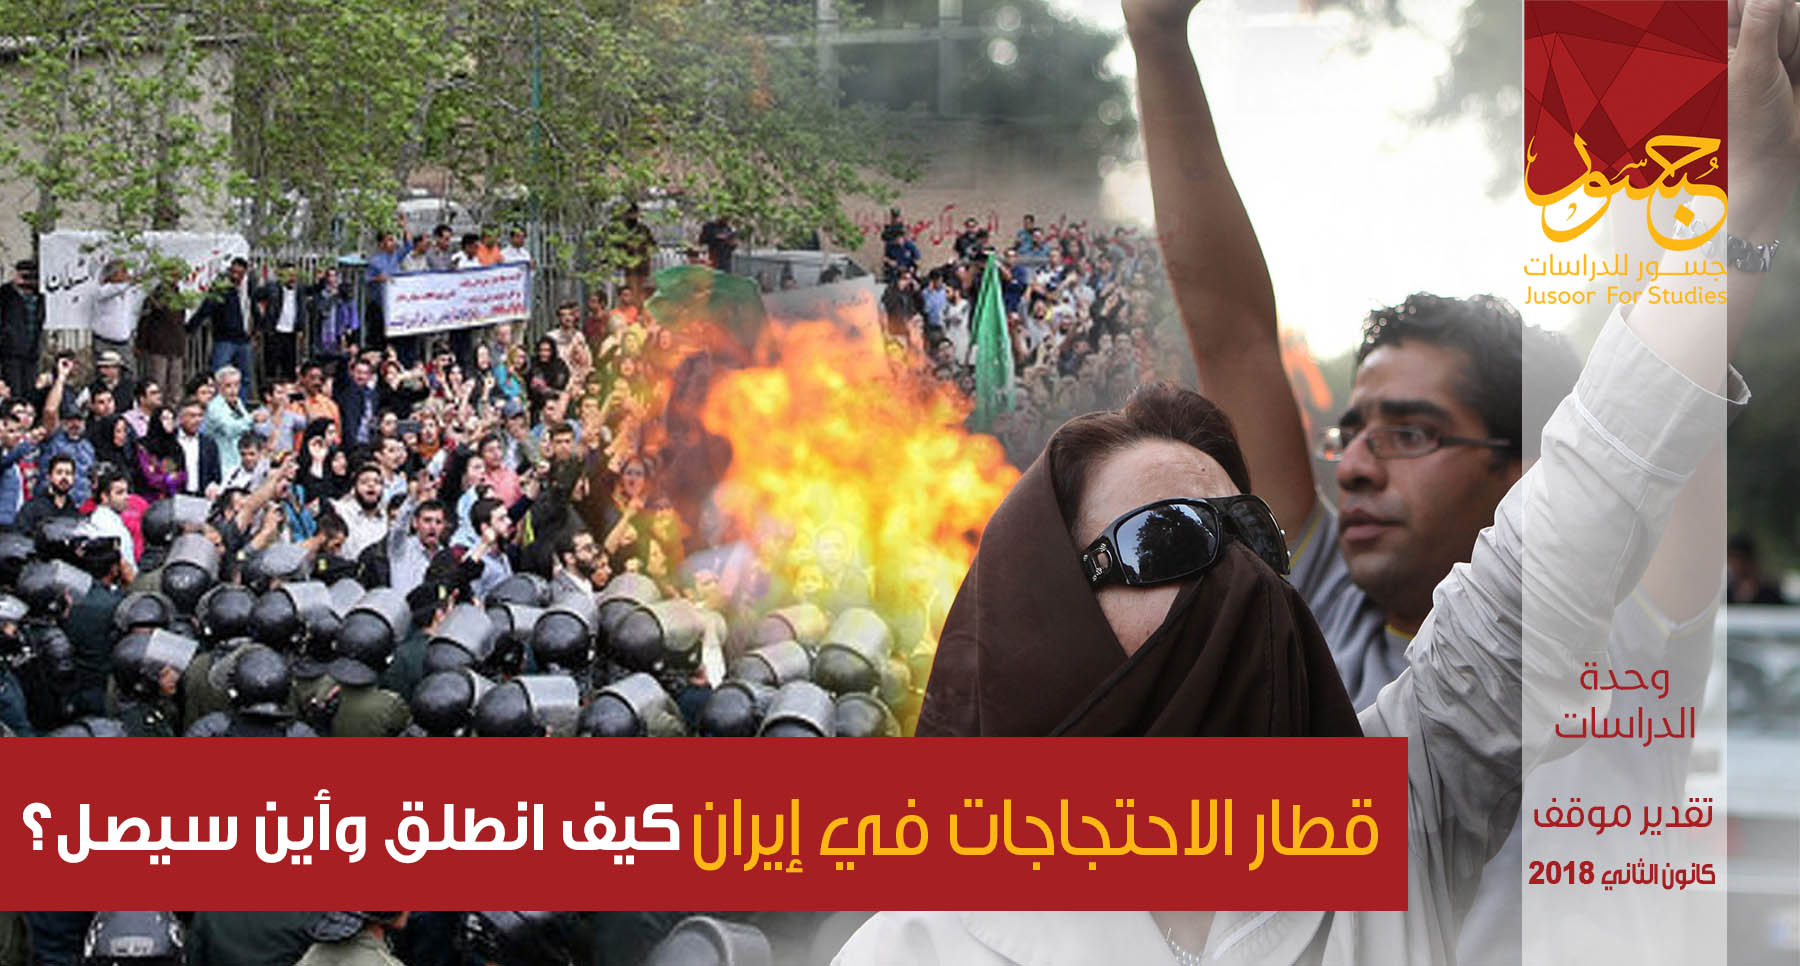 قطار الاحتجاجات في إيران..... كيف انطلق وأين سيصل؟